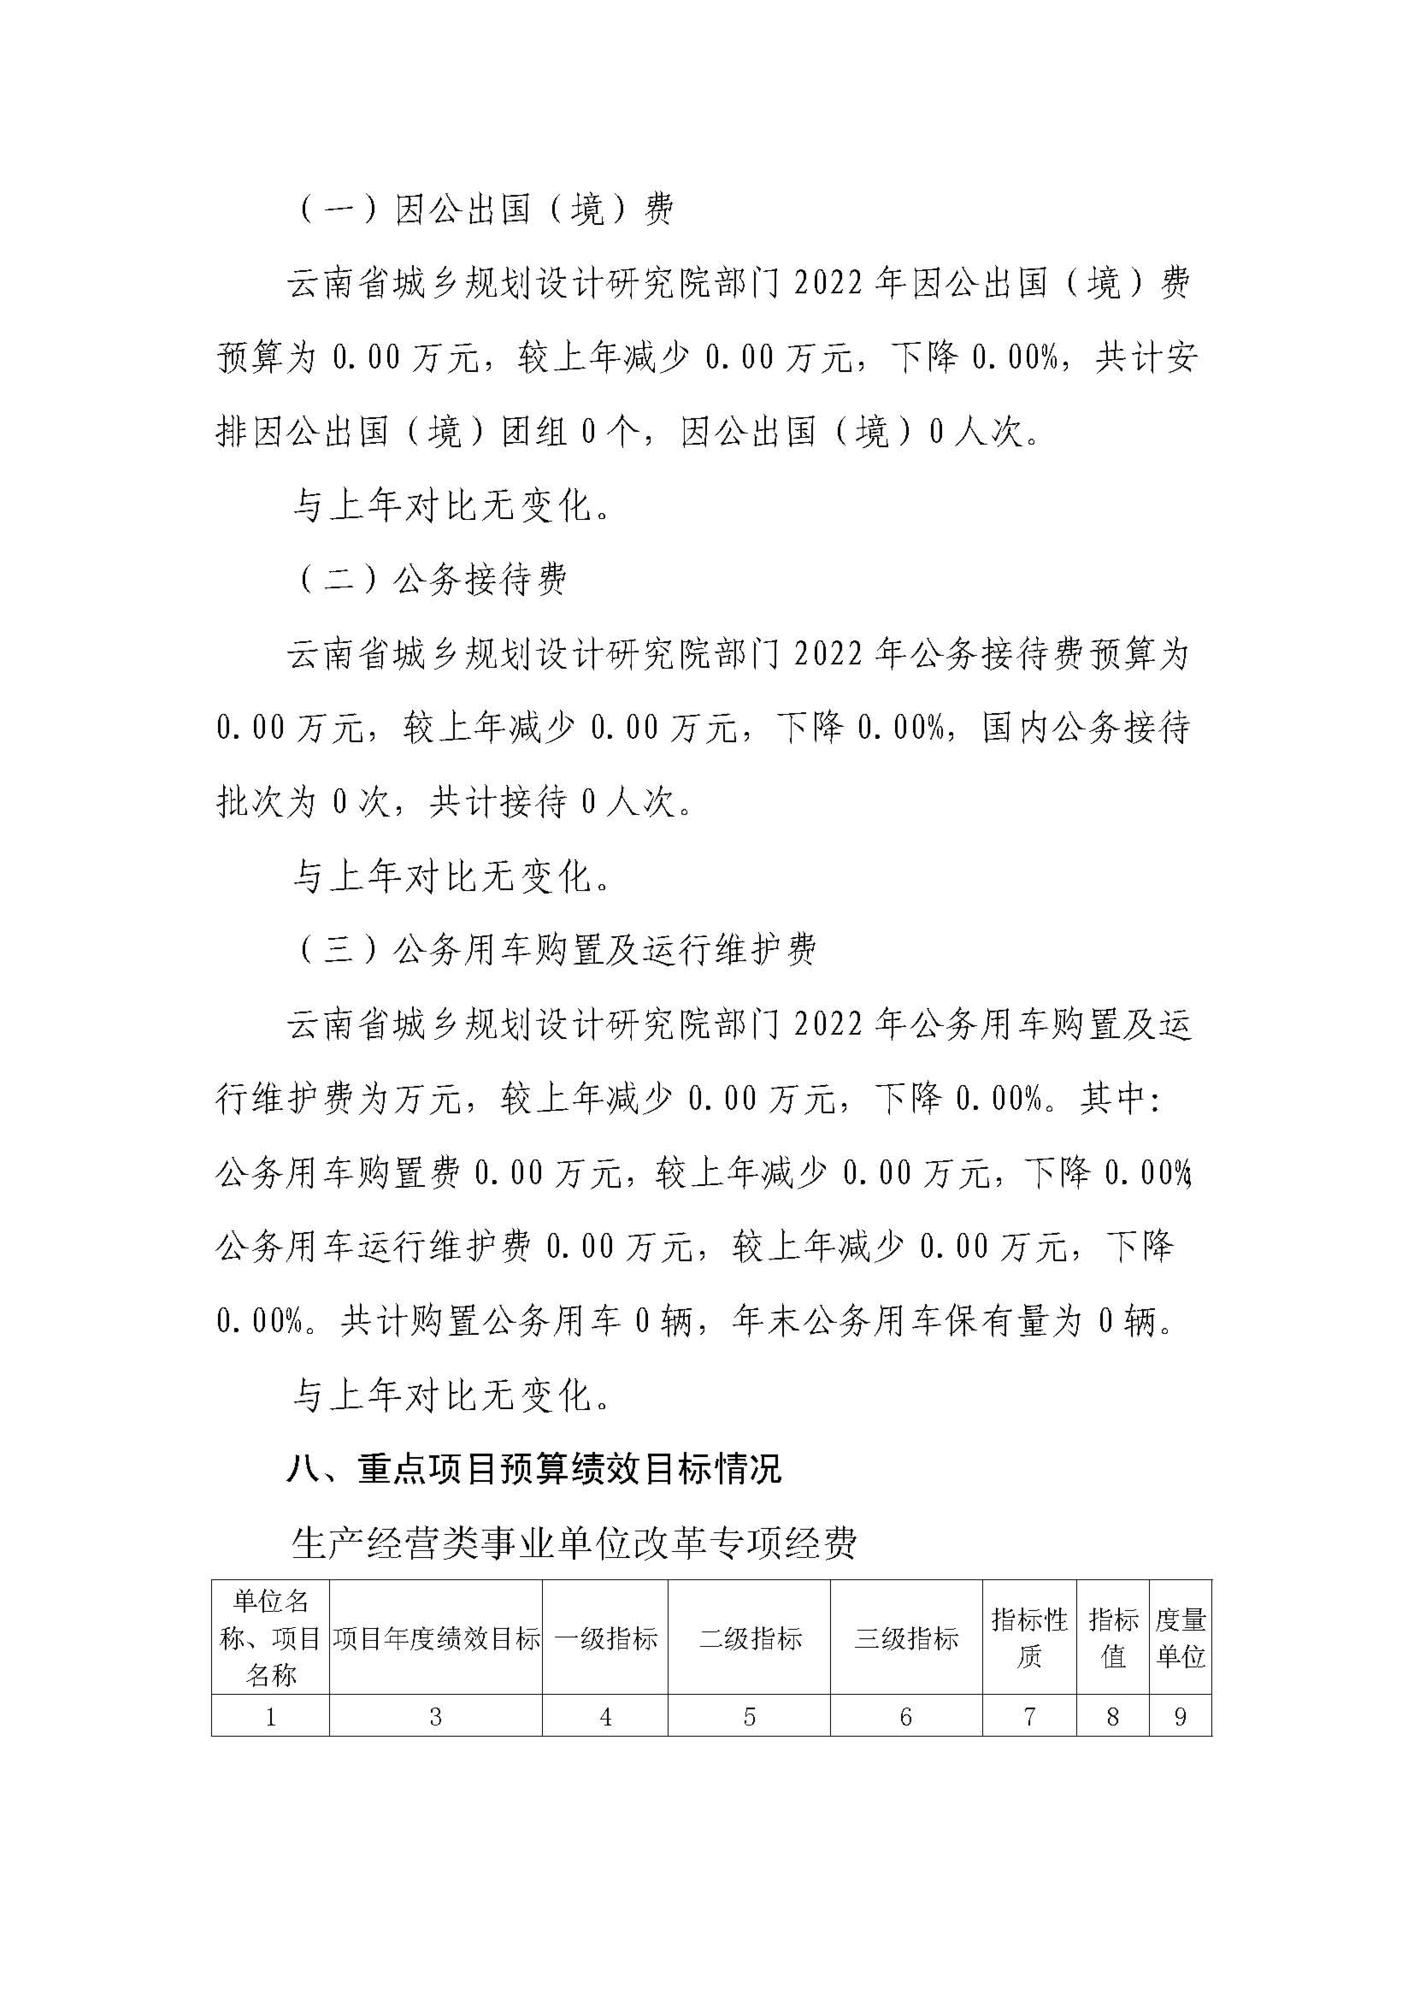 云南省城乡规划设计研究院（预算公开说明）_页面_08.jpg